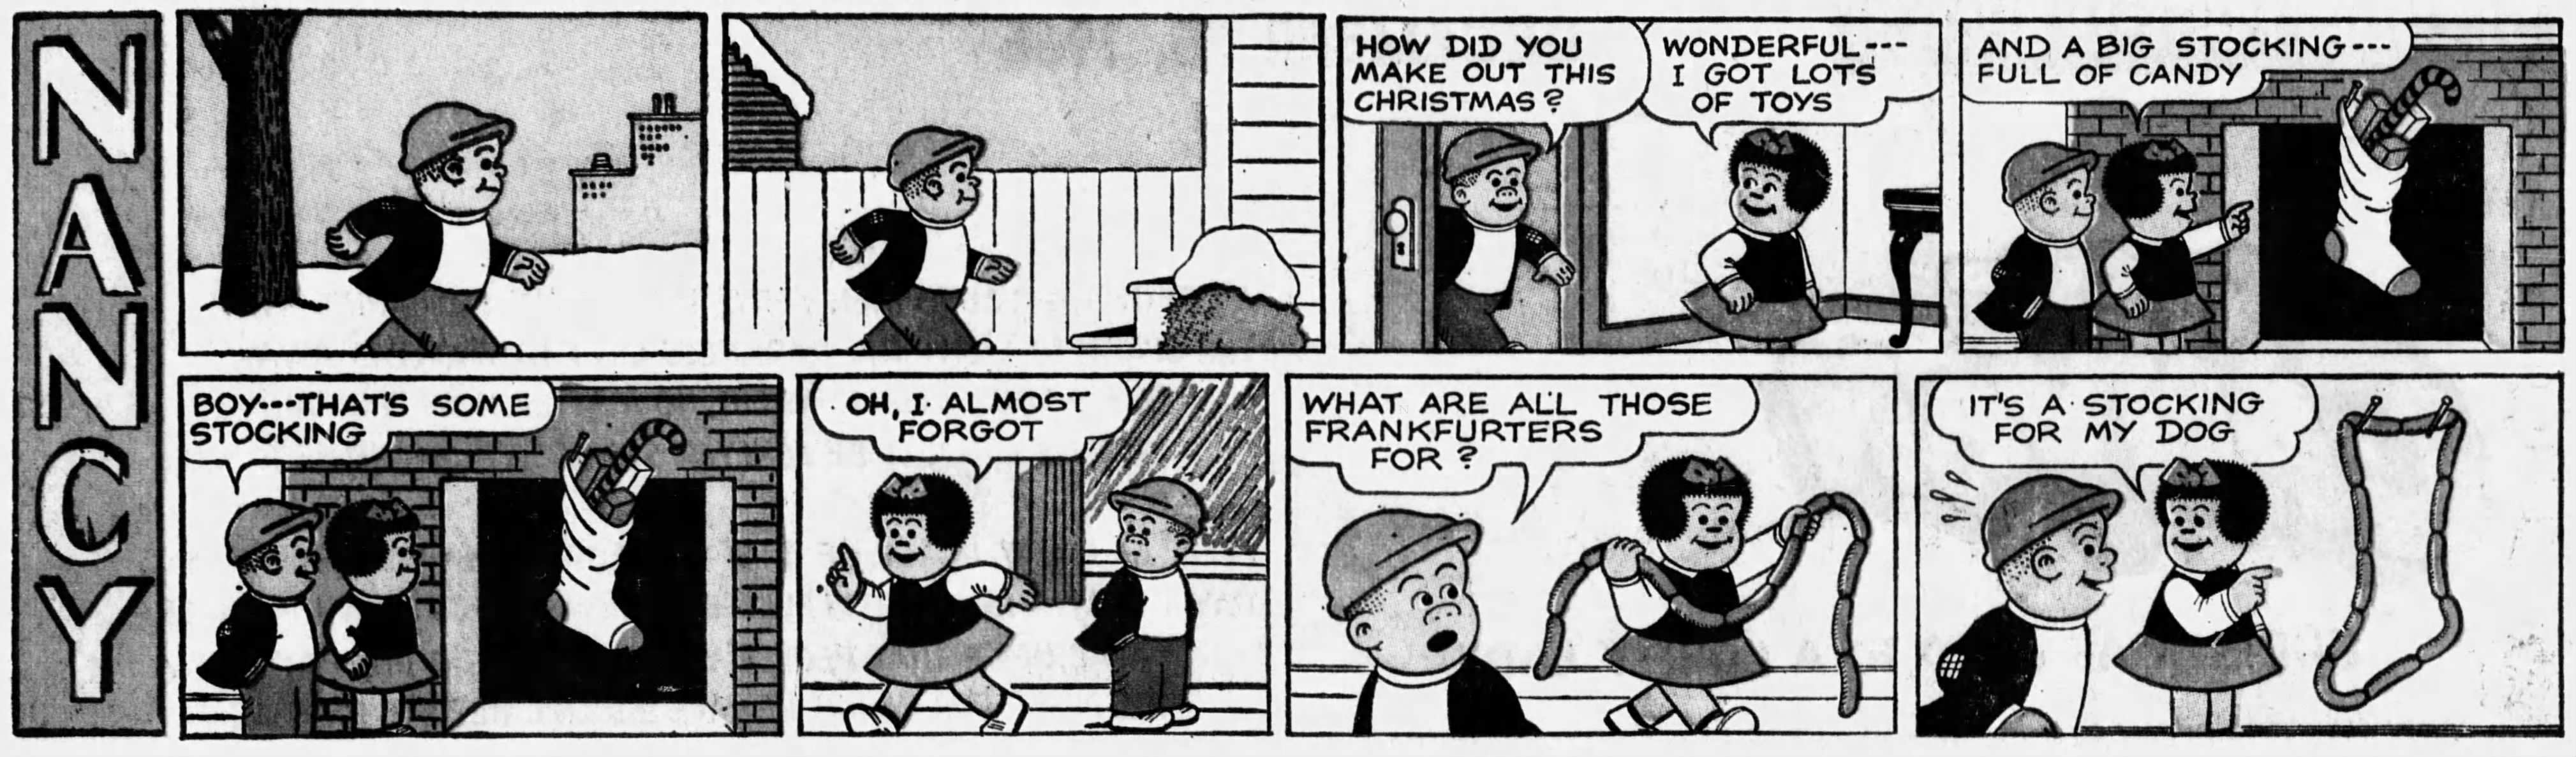 Nancy, December 25, 1966